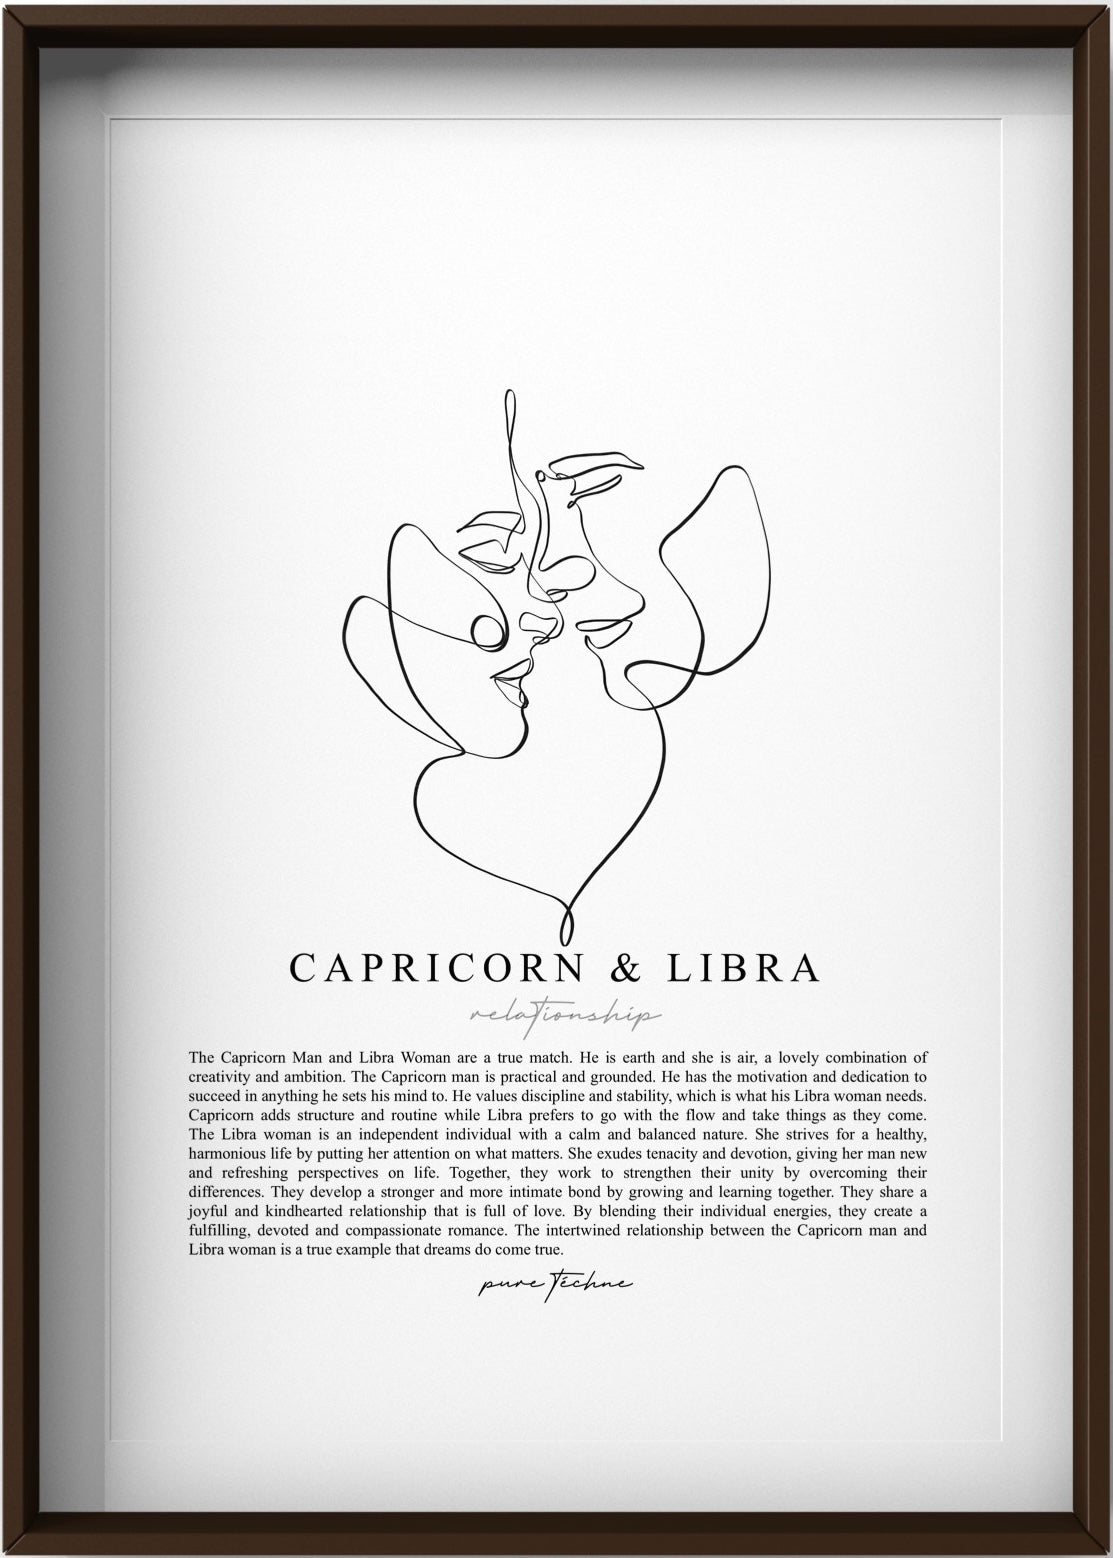 Capricorn Man & Libra Woman